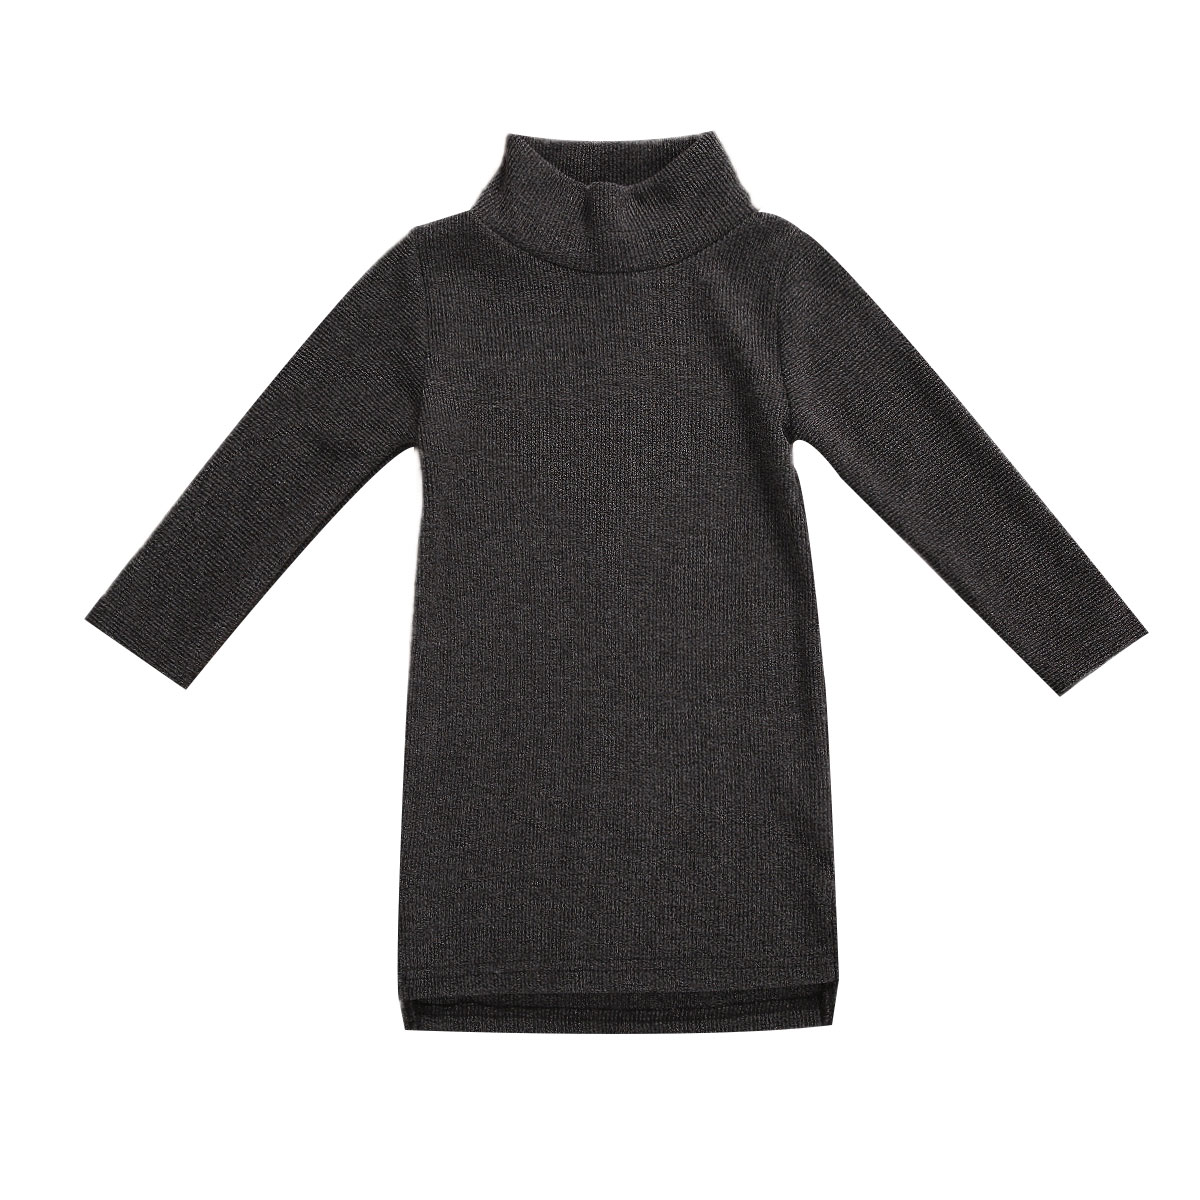 Efterår / vinter toddler barn pige lang sweater langærmet langermet hals varm behagelig udendørs kjole tøj